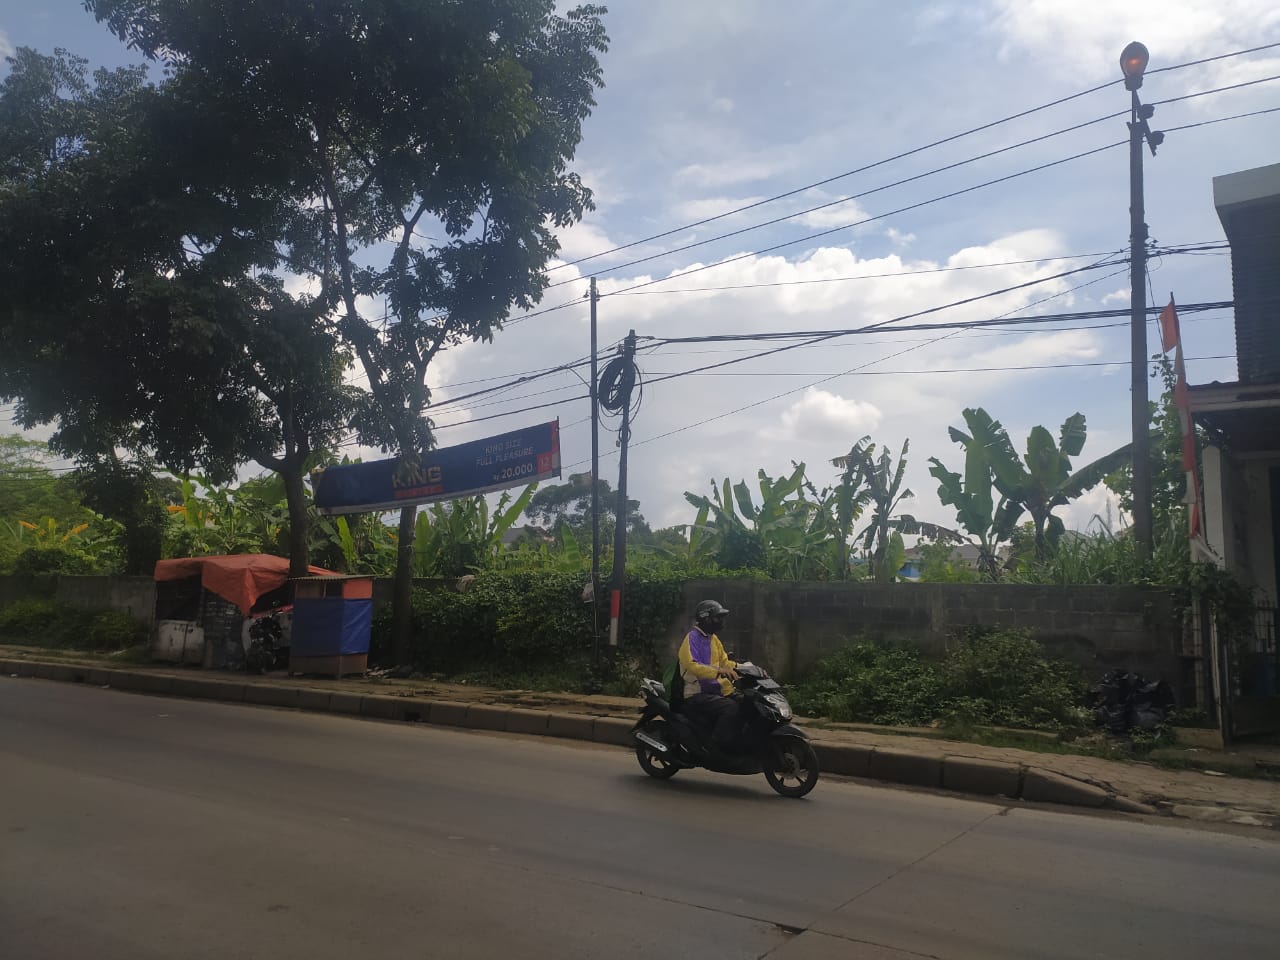 Pengendara sepeda motor saat melewati PJU yang menyala di Jalan Raya Ciburuy, Padalarang. Sementara beberapa PJU lainnya dalam kondisi mati. (Akmal Firmansyah/JabarEkspres)